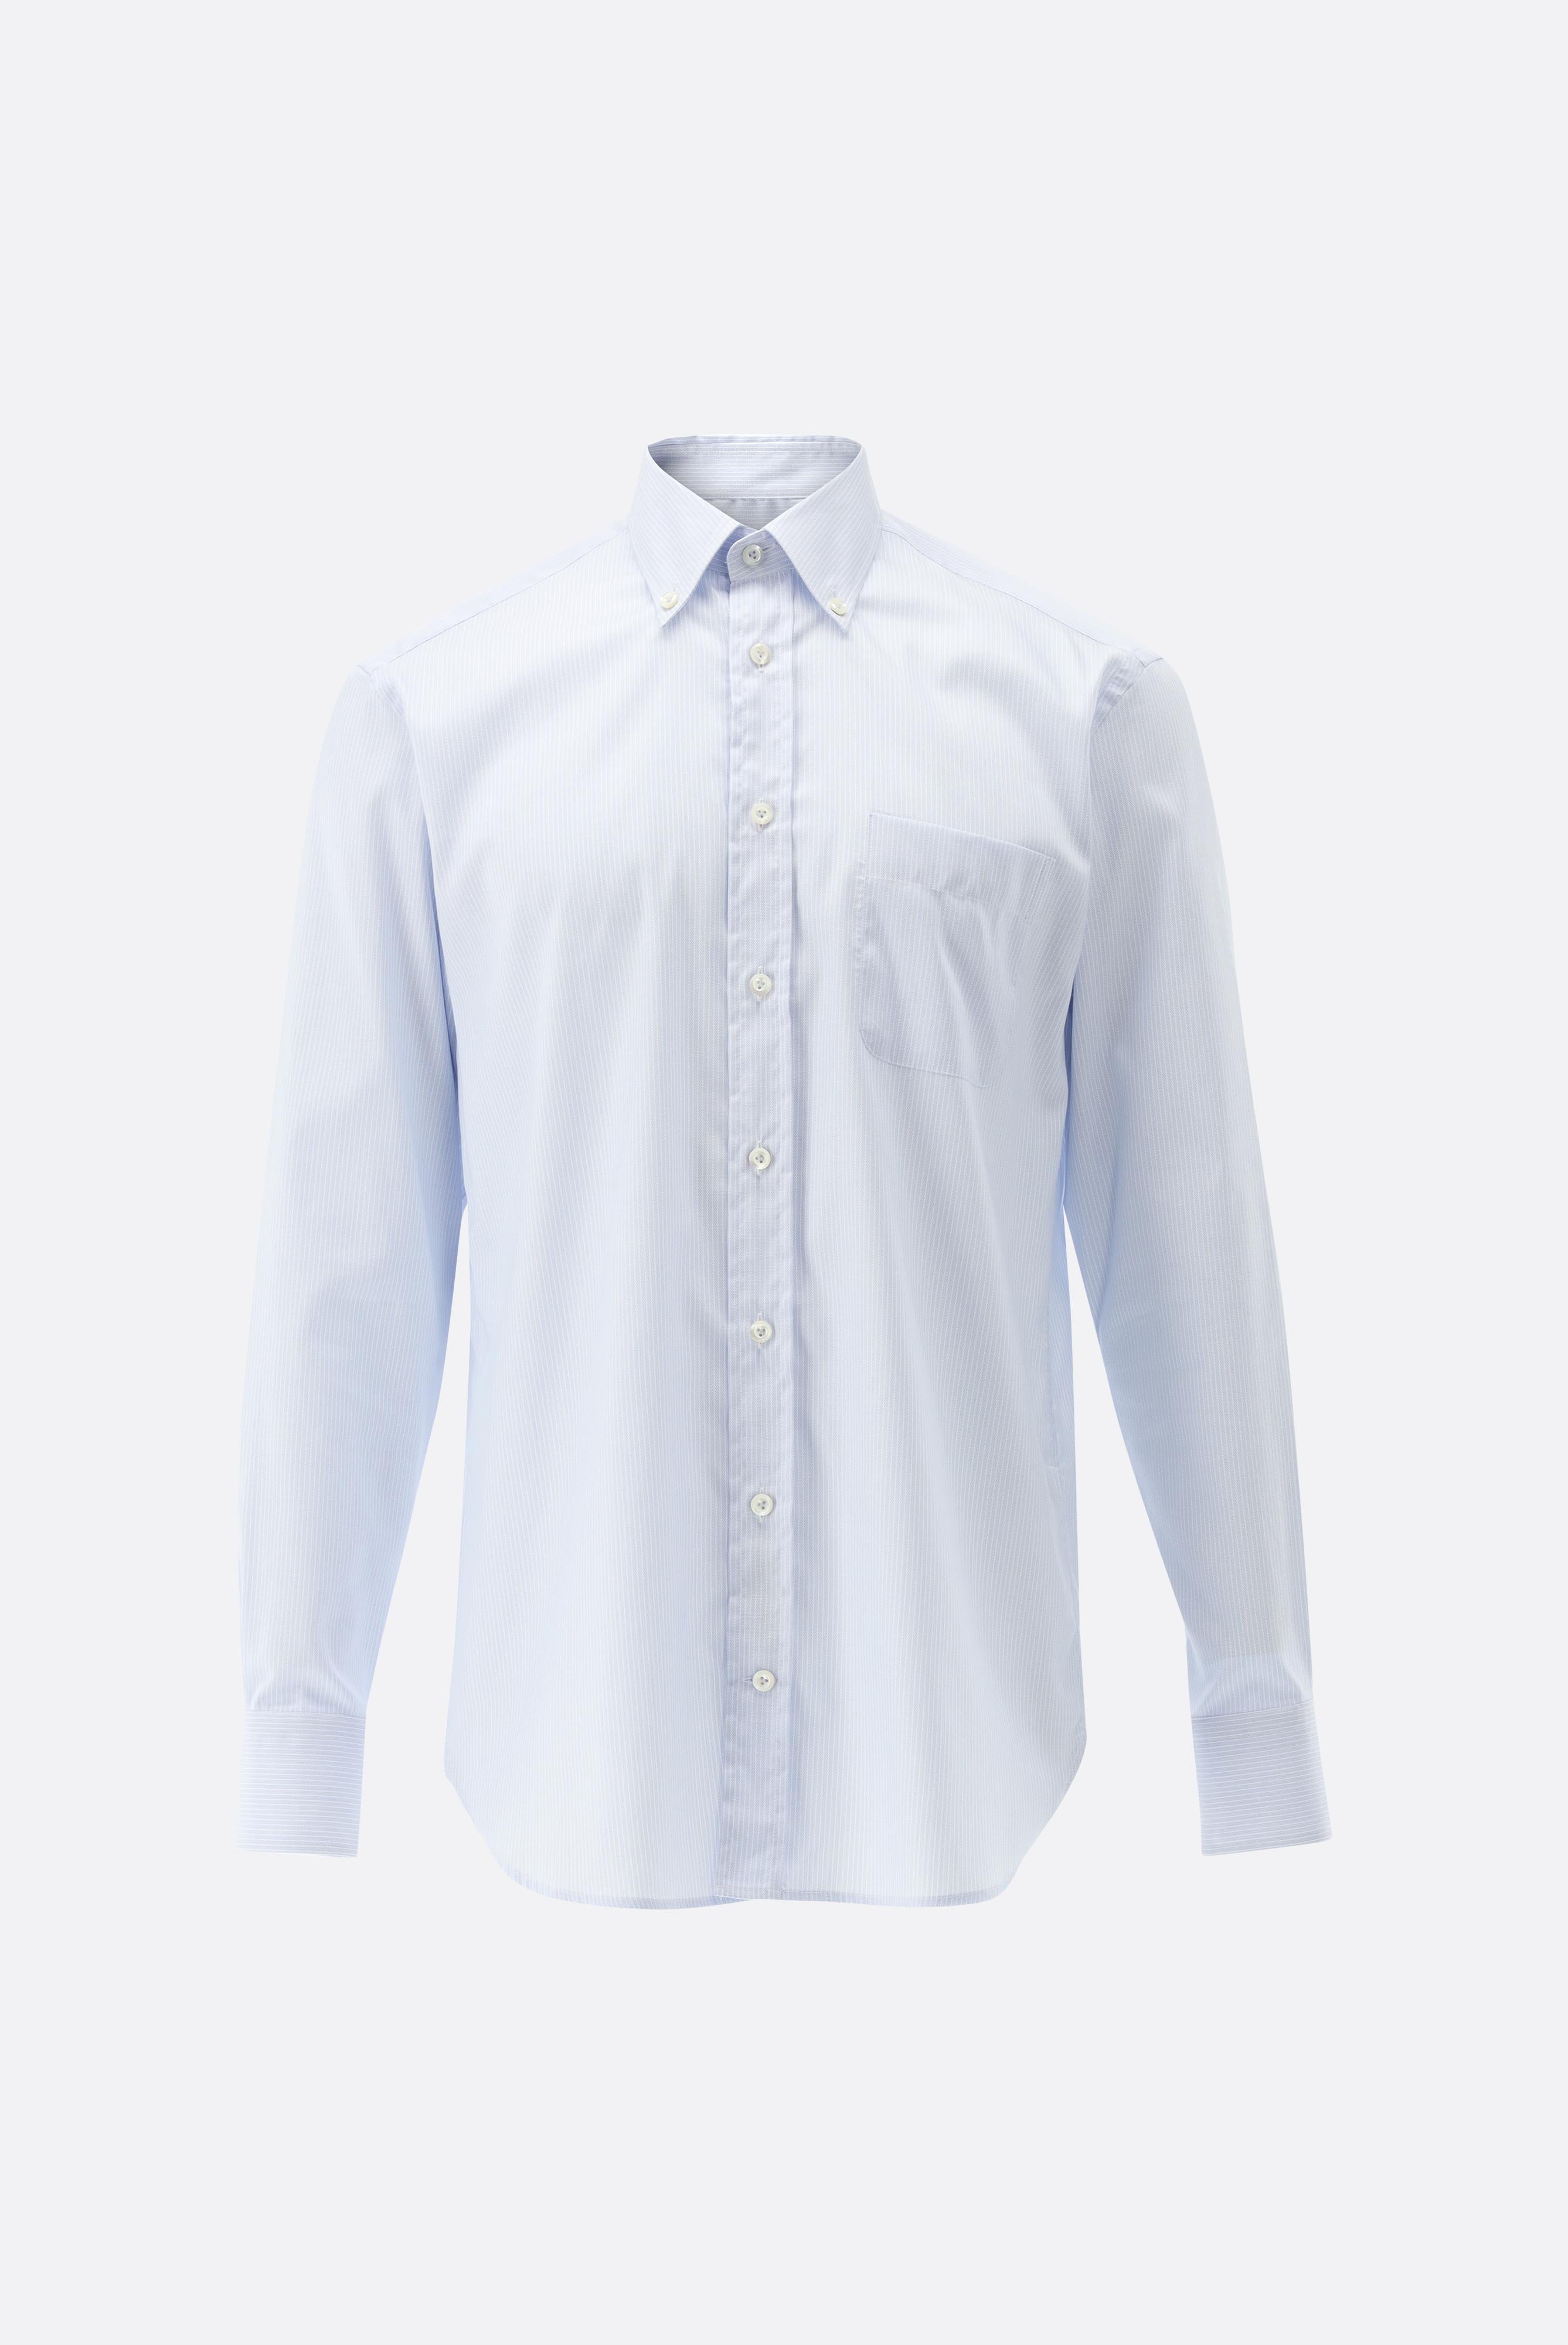 Bügelleichte Hemden+Bügelfreies Hemd mit Streifen Comfort Fit+20.2026.BQ.161109.710.42